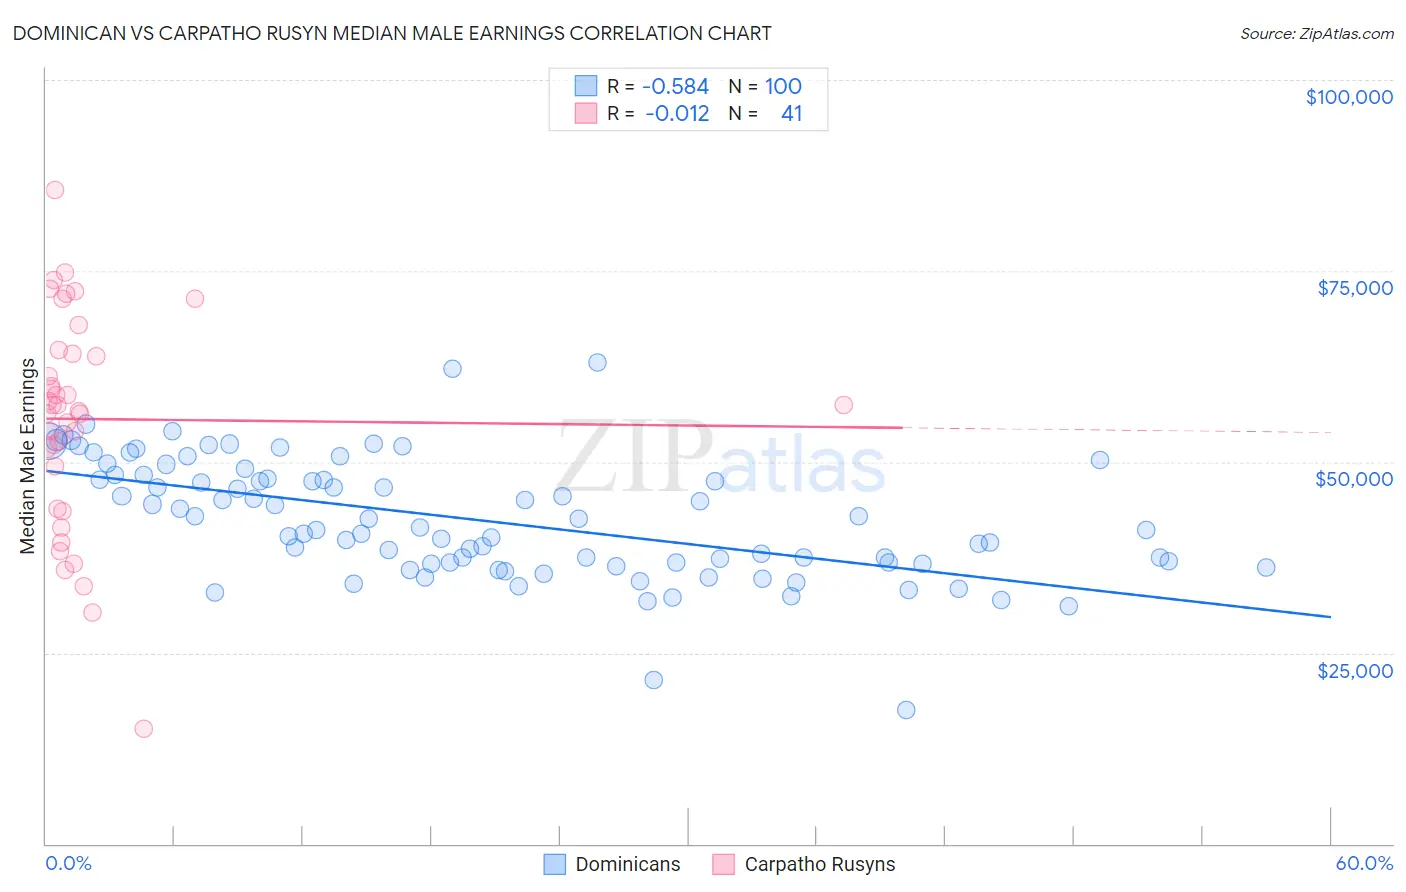 Dominican vs Carpatho Rusyn Median Male Earnings